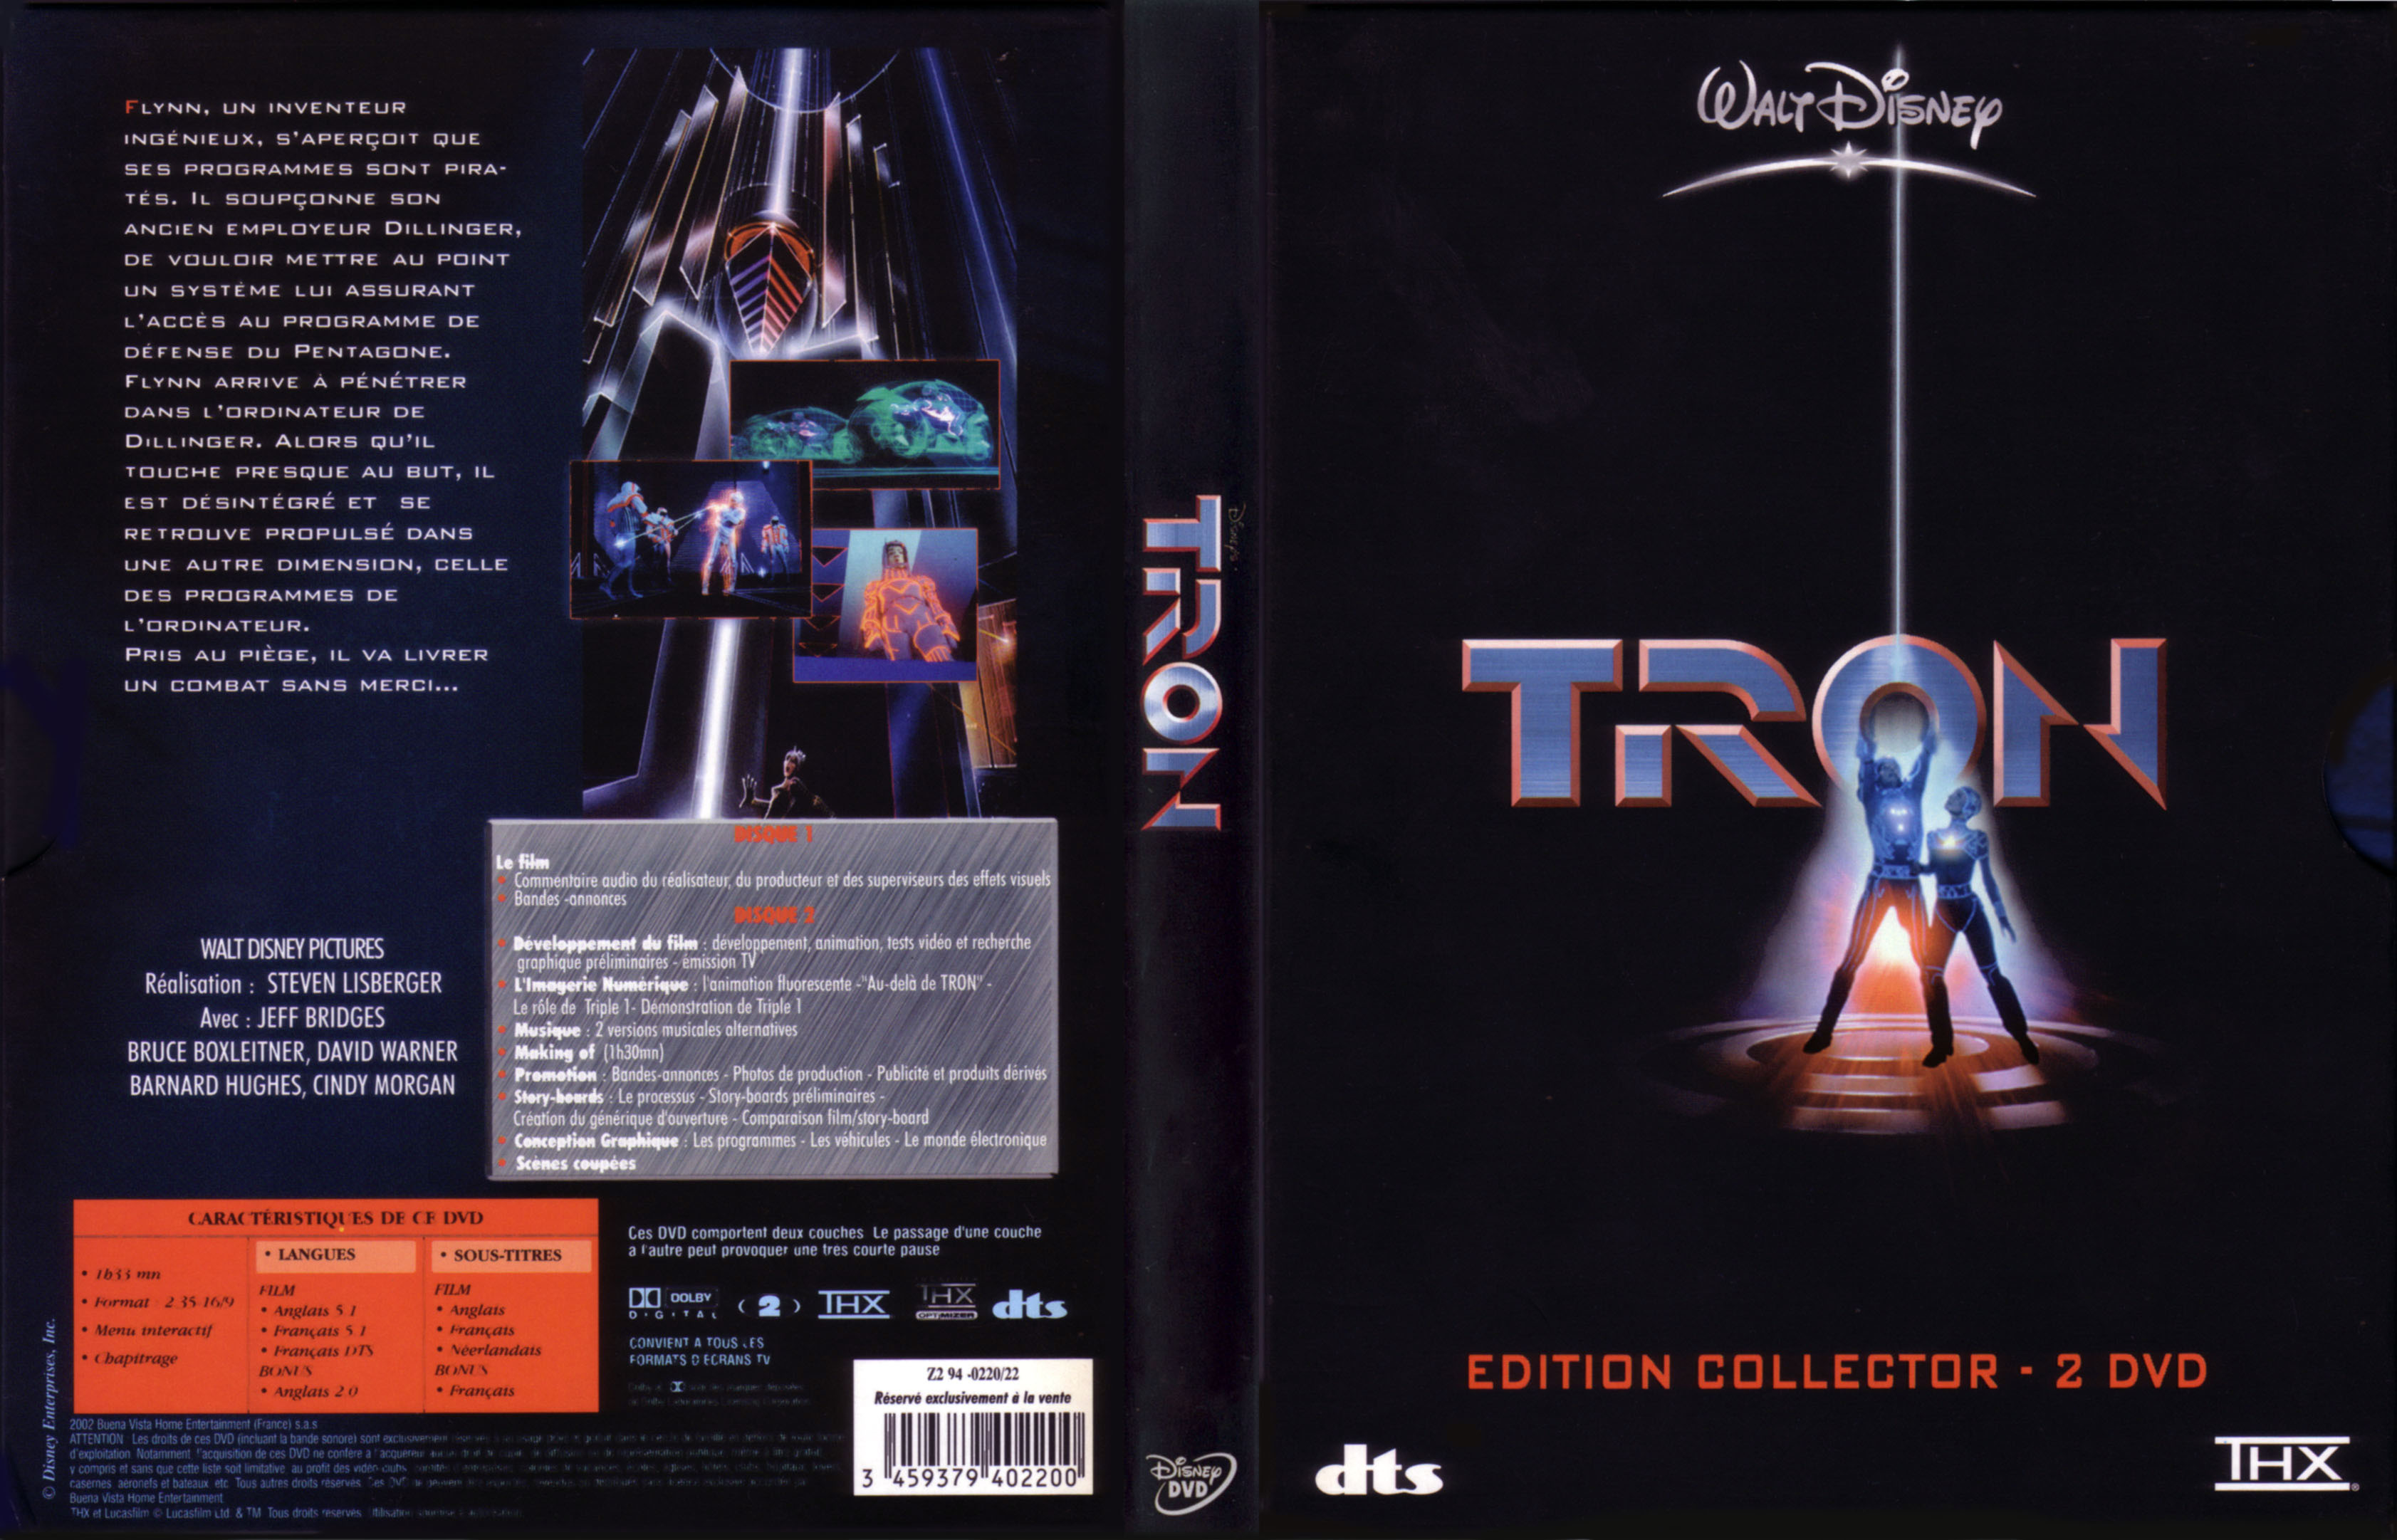 Jaquette DVD Tron v2